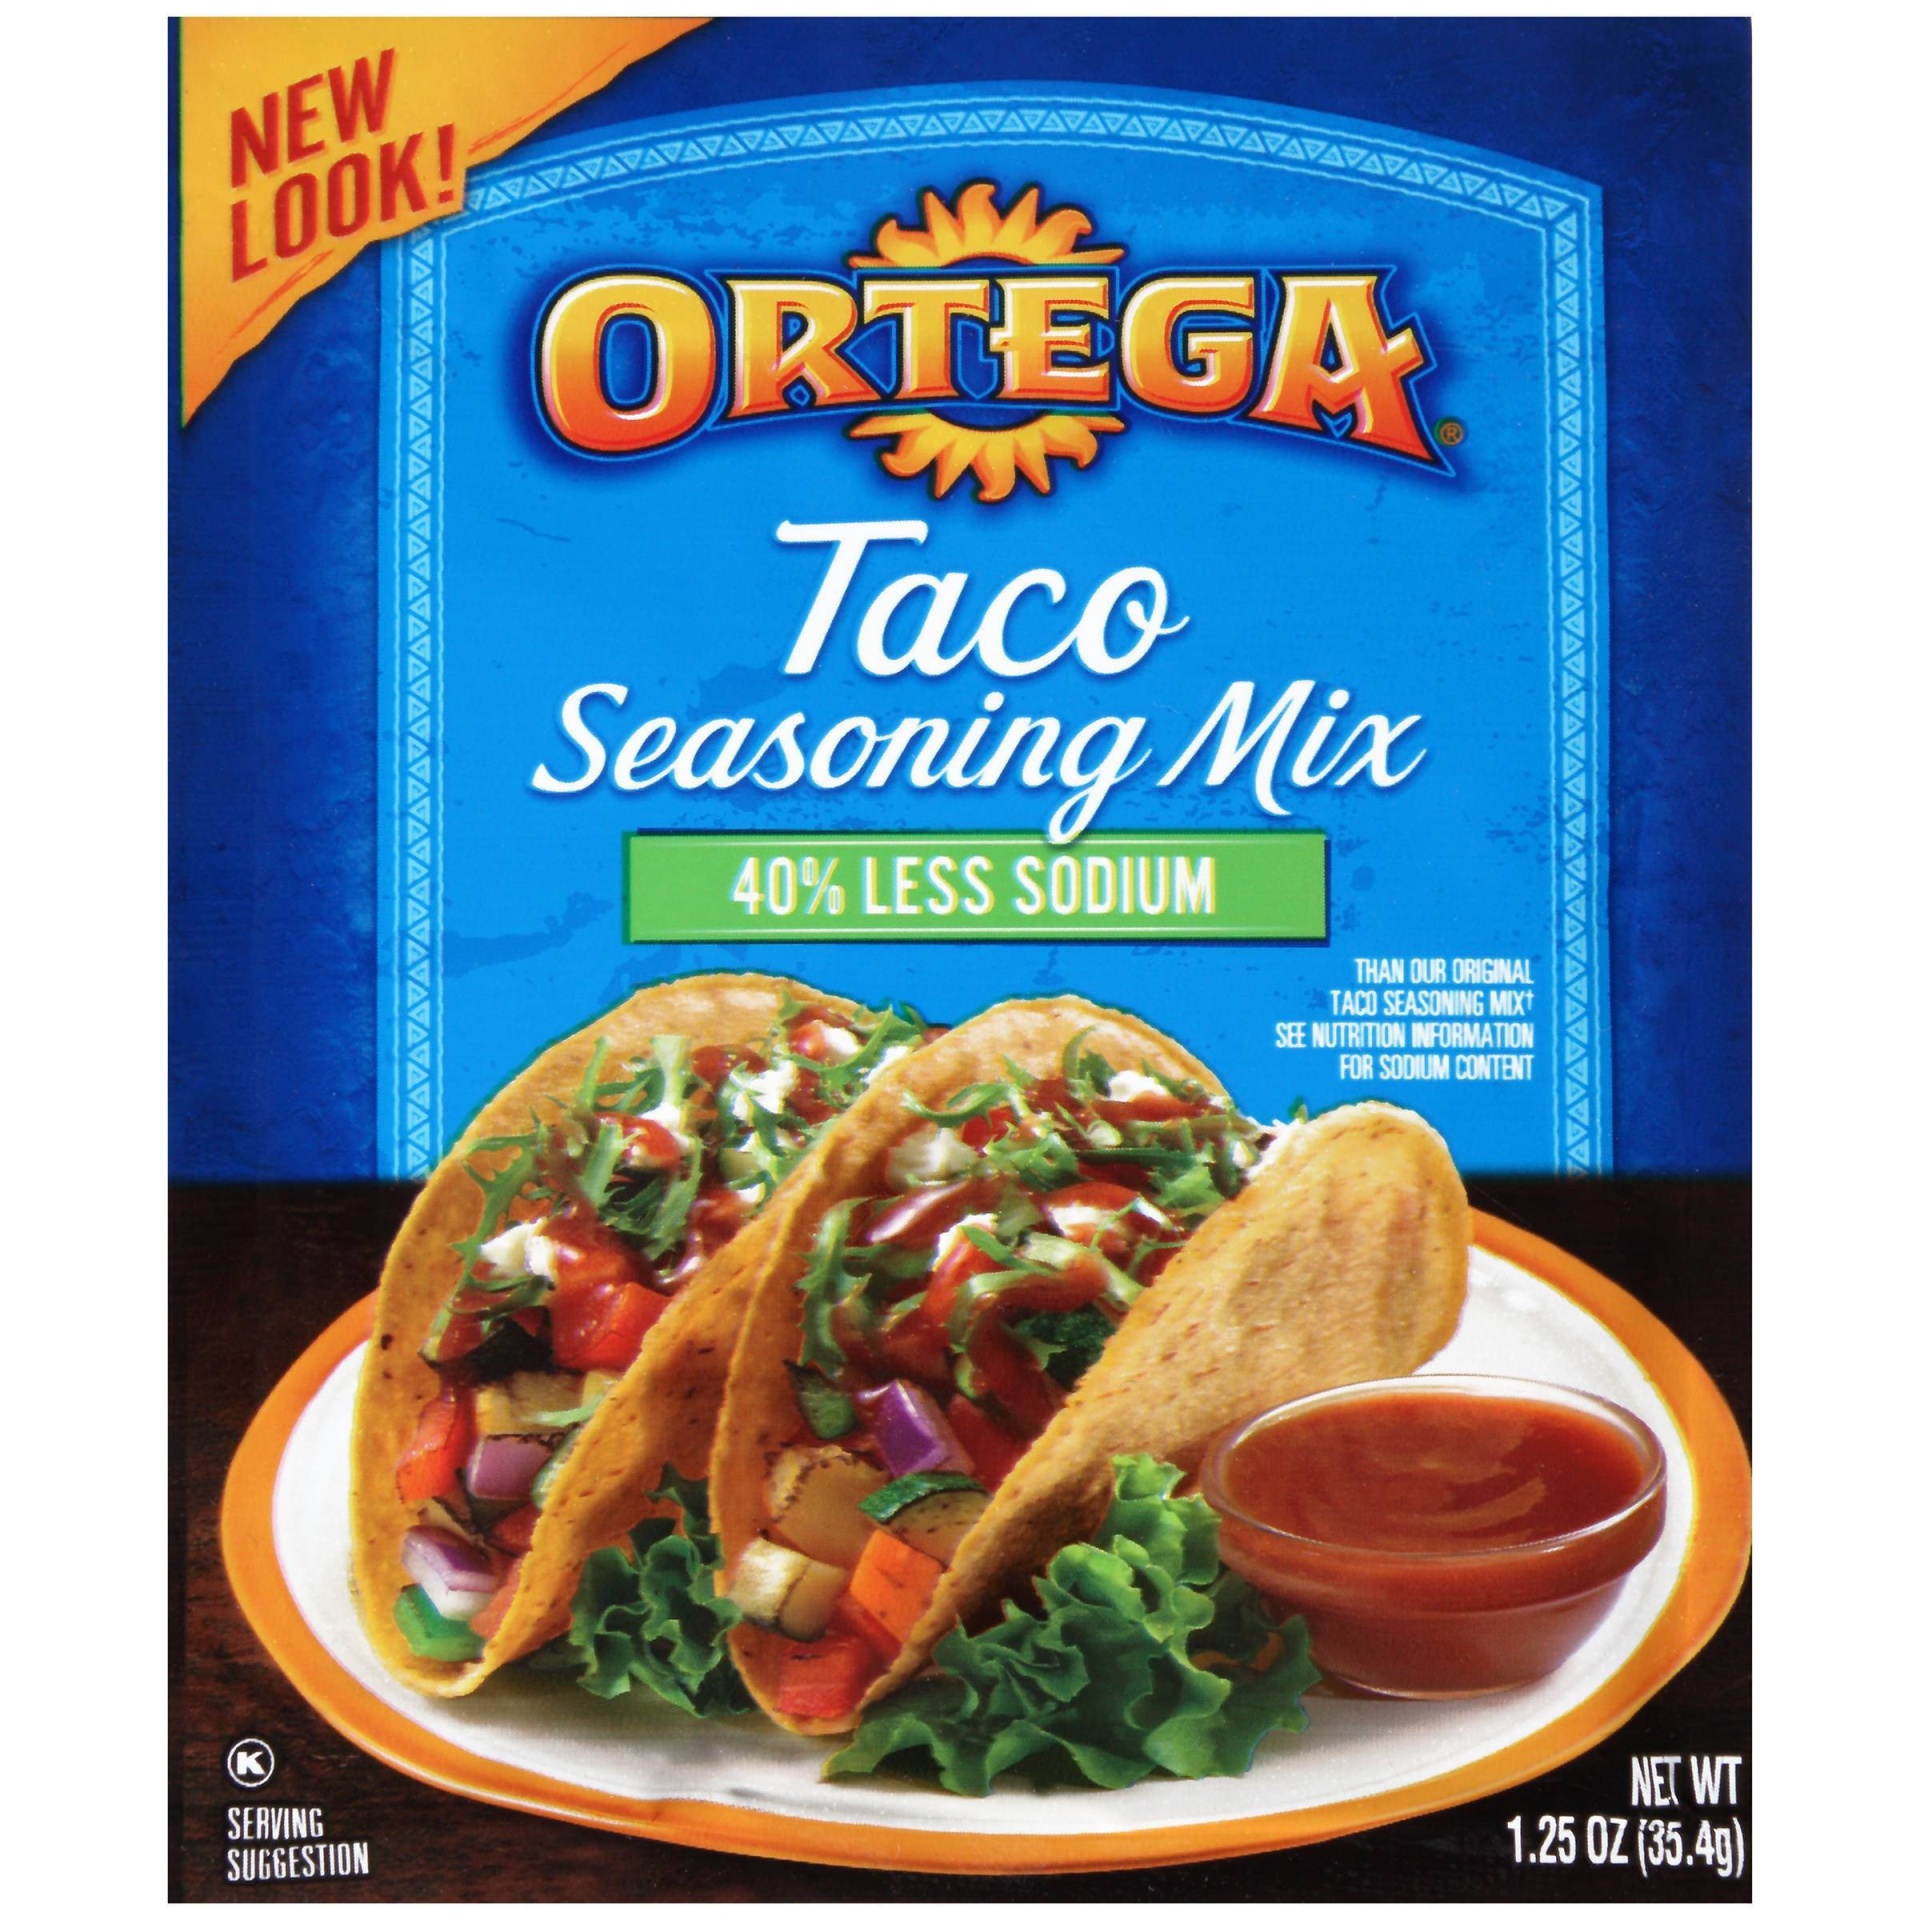 slide 1 of 6, Ortega Taco Seasoning Mix 40% Less Sodium, 1.25 oz